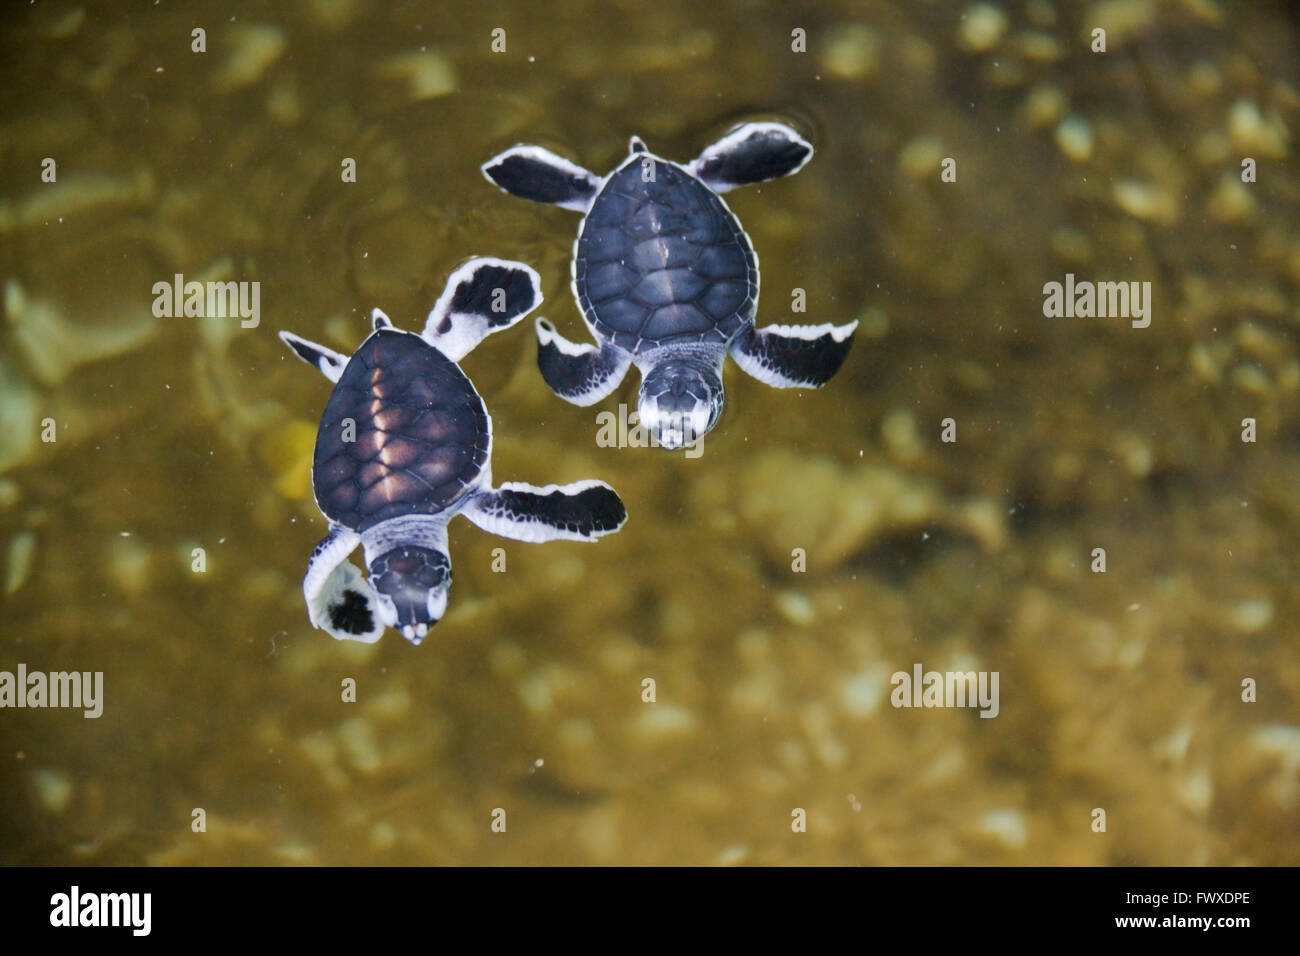 Di recente le tartarughe tratteggiata in acqua, tartarughe di mare centro di cova, Bentota, sud della provincia, Sri Lanka Foto Stock